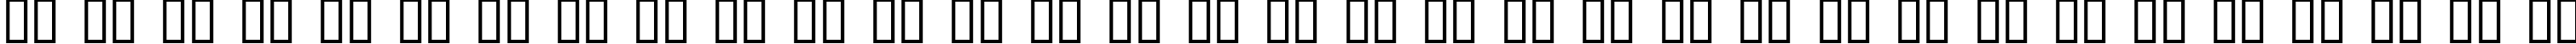 Пример написания русского алфавита шрифтом Cruickshank